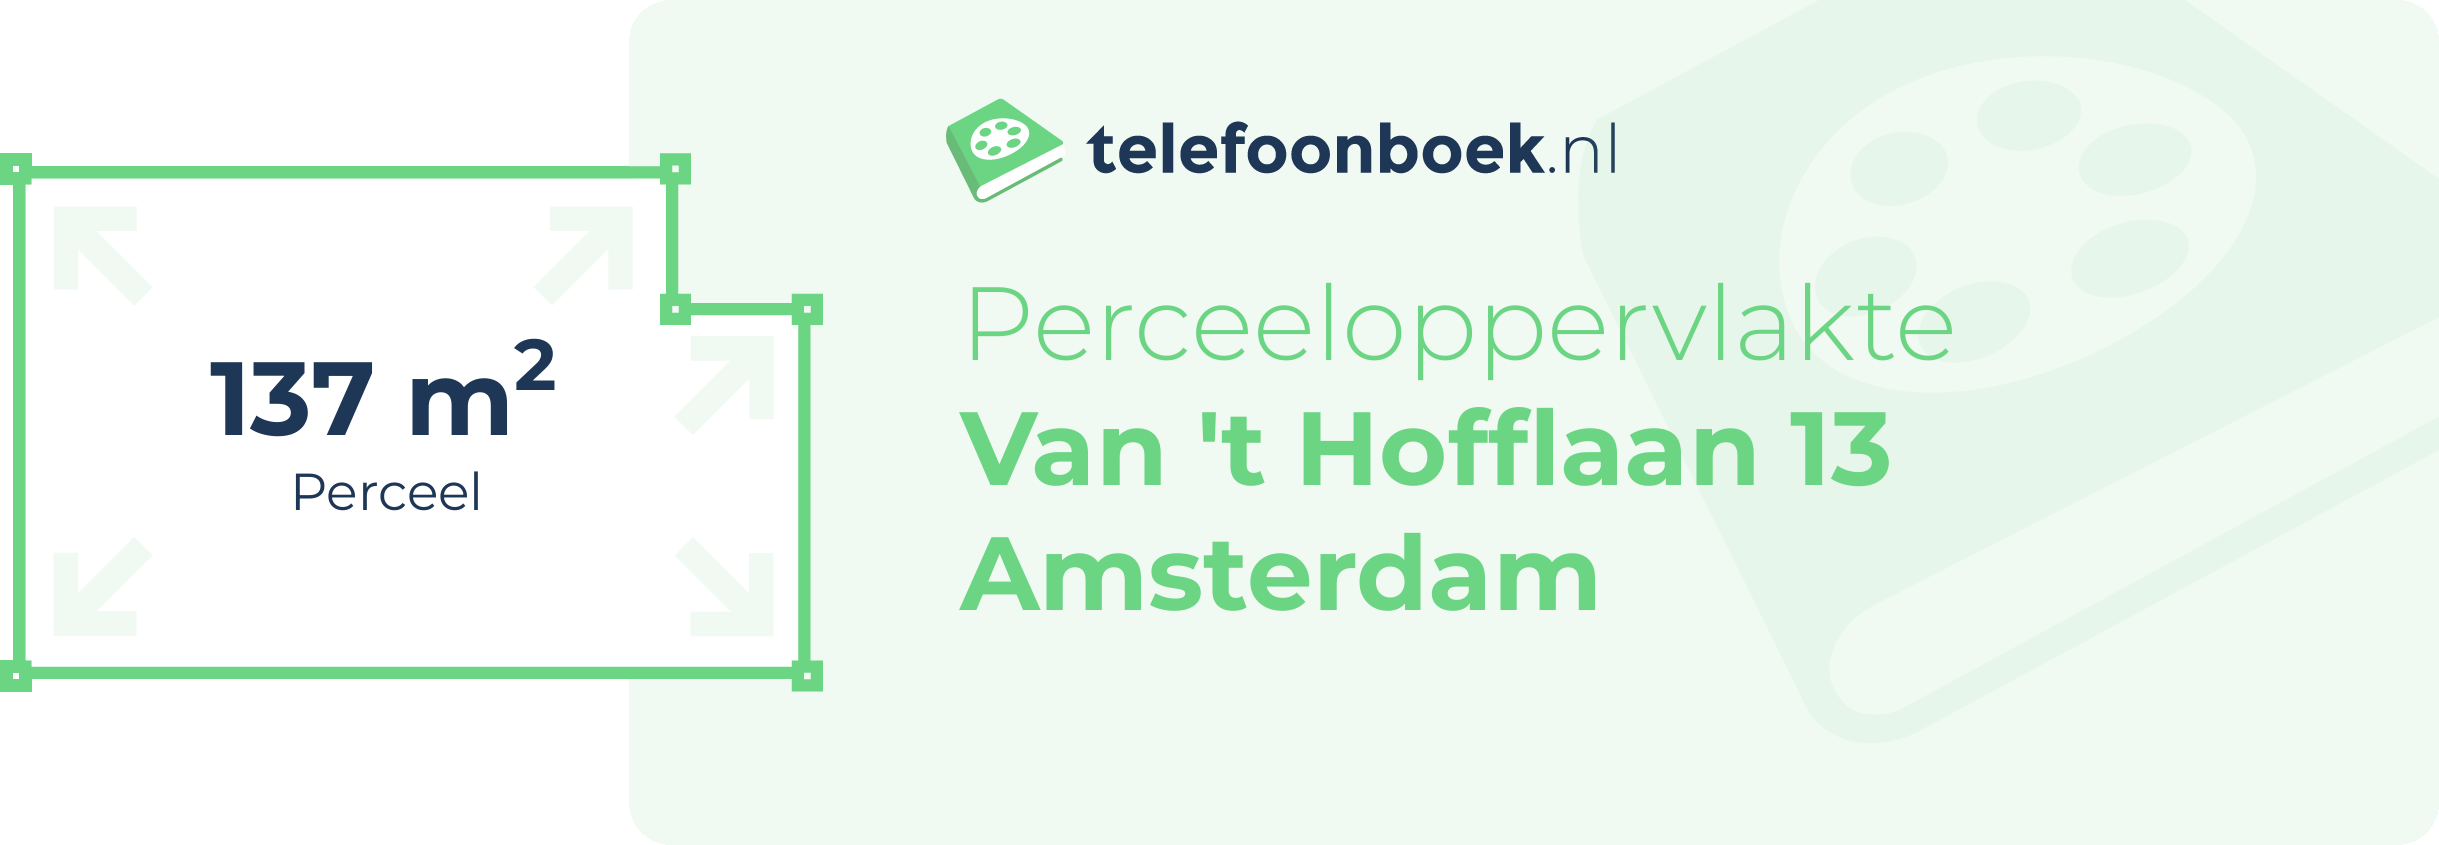 Perceeloppervlakte Van 't Hofflaan 13 Amsterdam